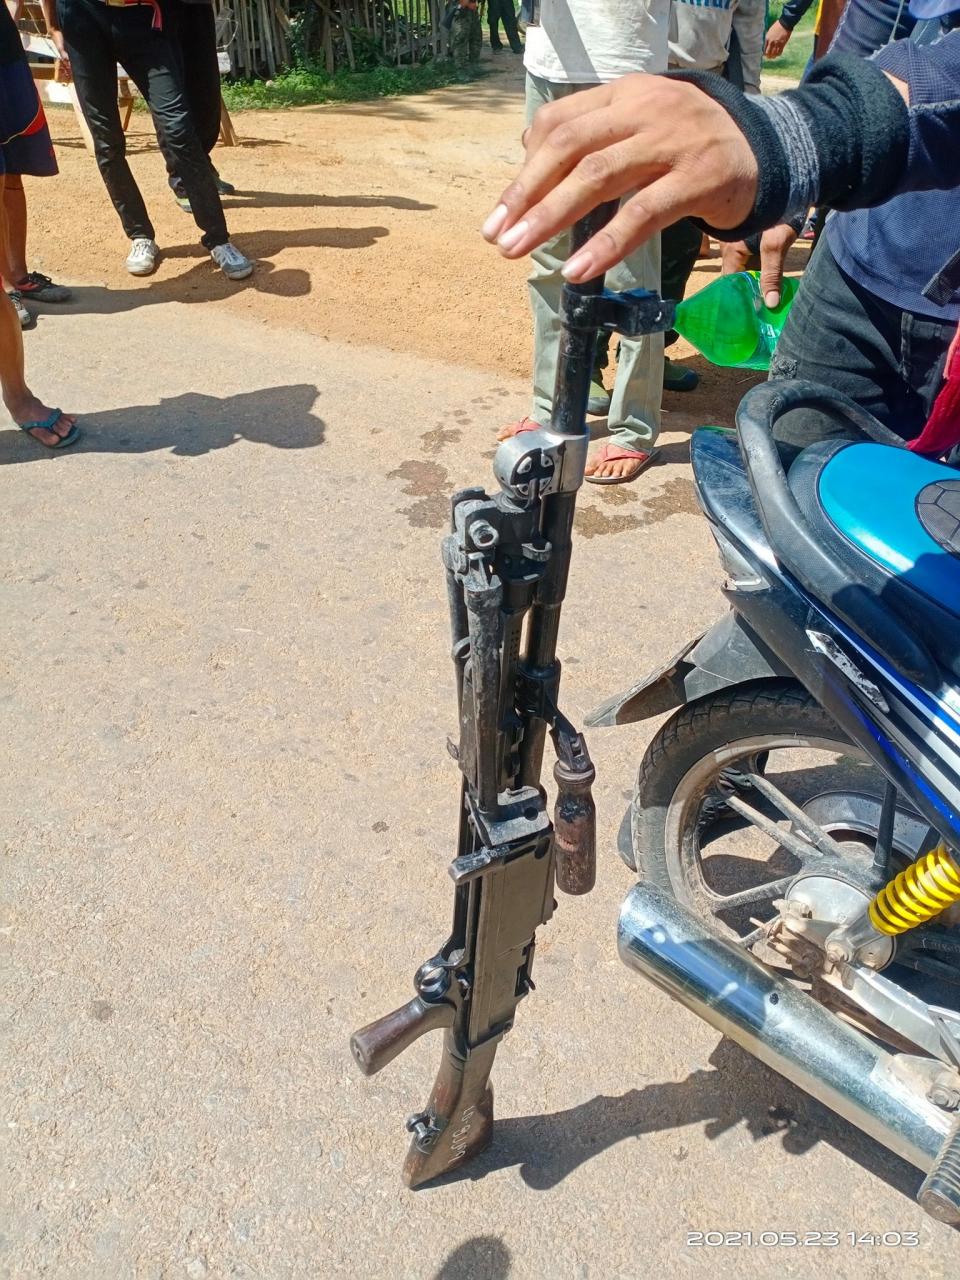 克耶邦民間武裝攻打緬甸警察部隊後繳獲的佈倫輕機槍-圖1